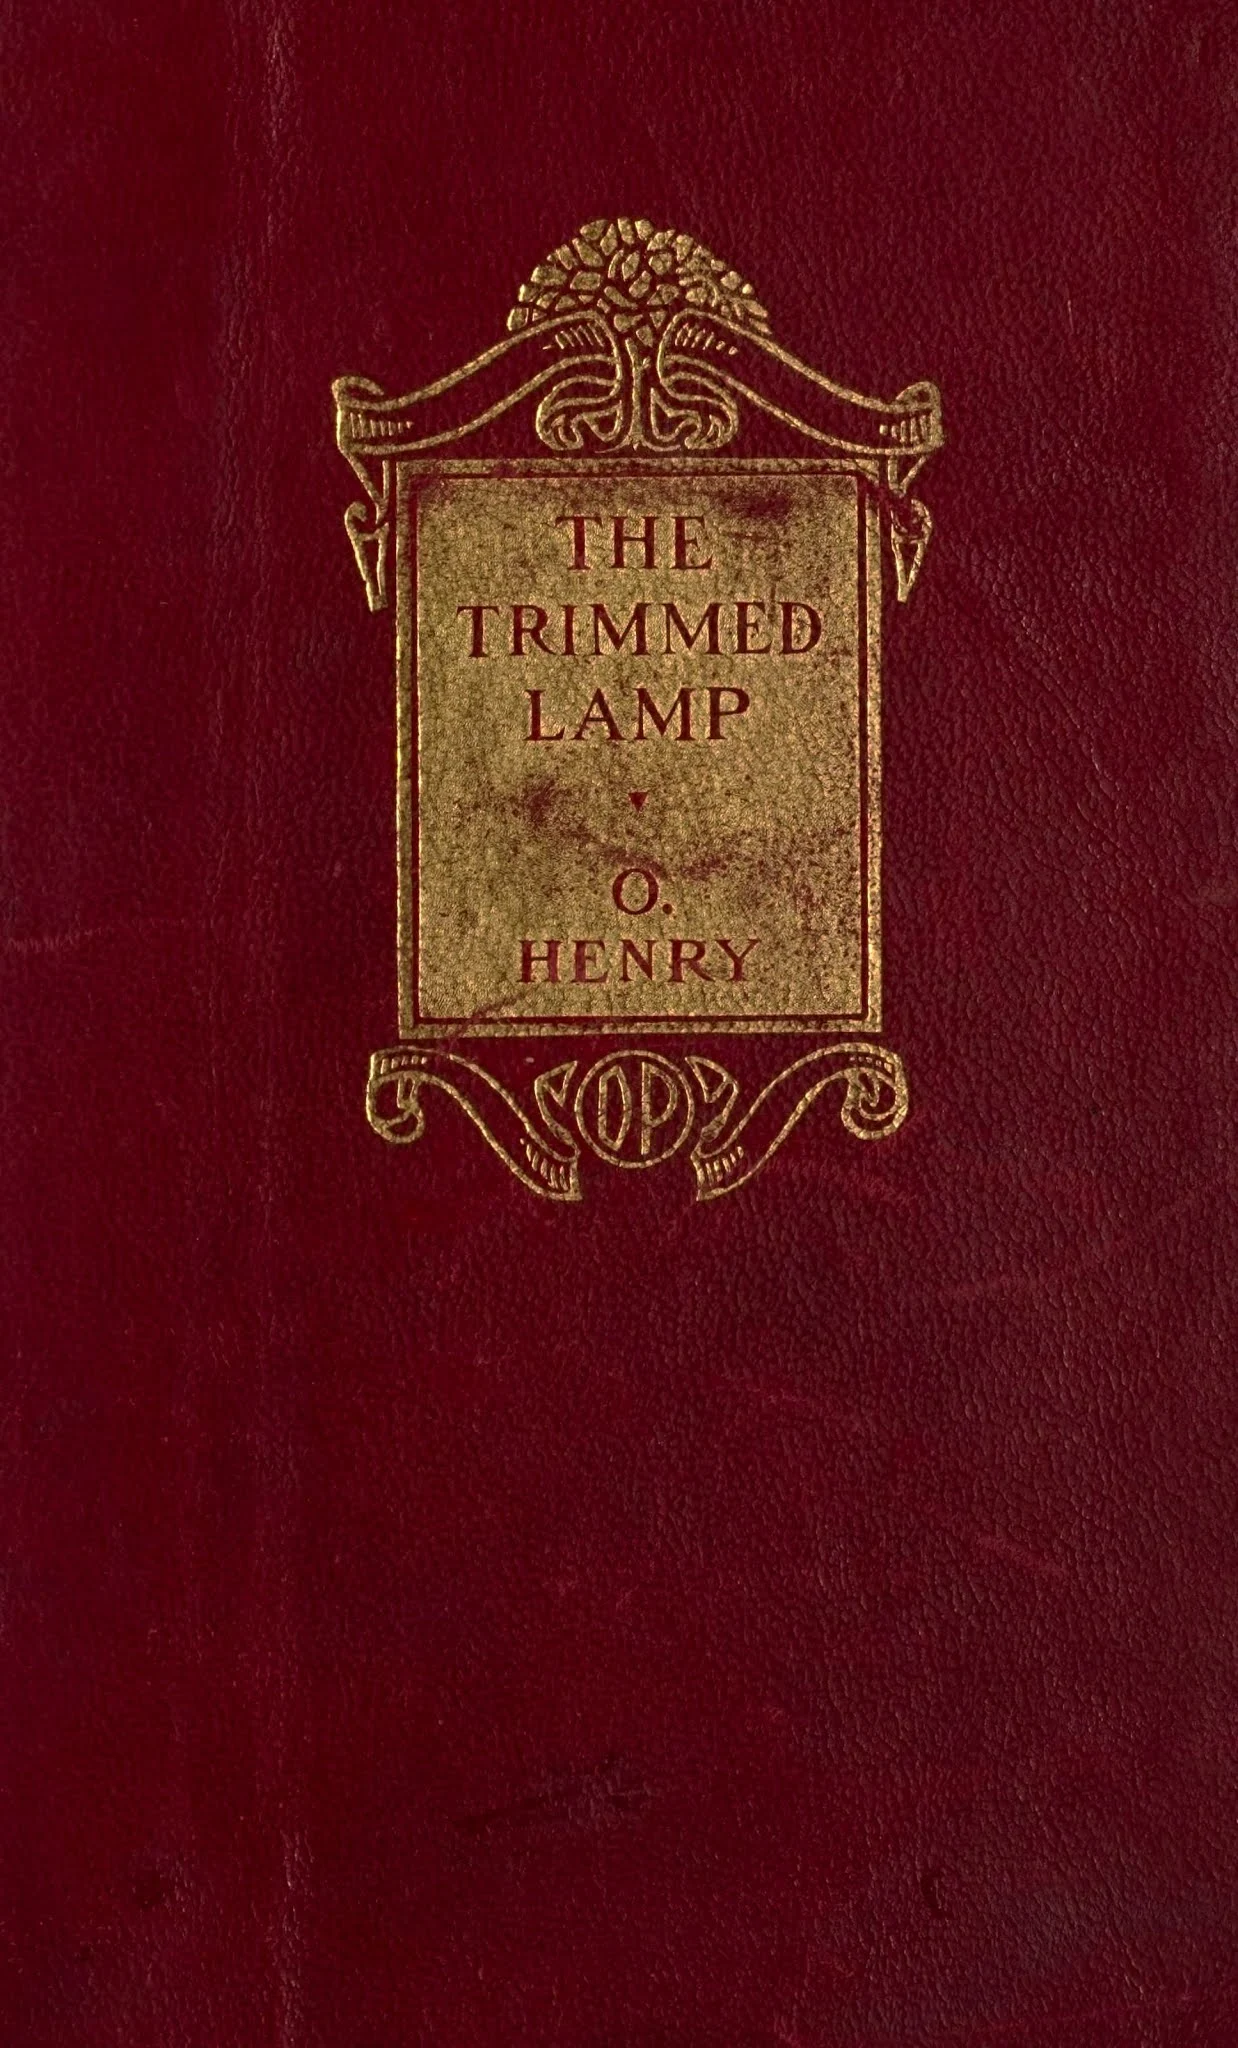 Ｏ・ヘンリーの『最後の葉っぱ』を含む小説集の赤茶色の表紙